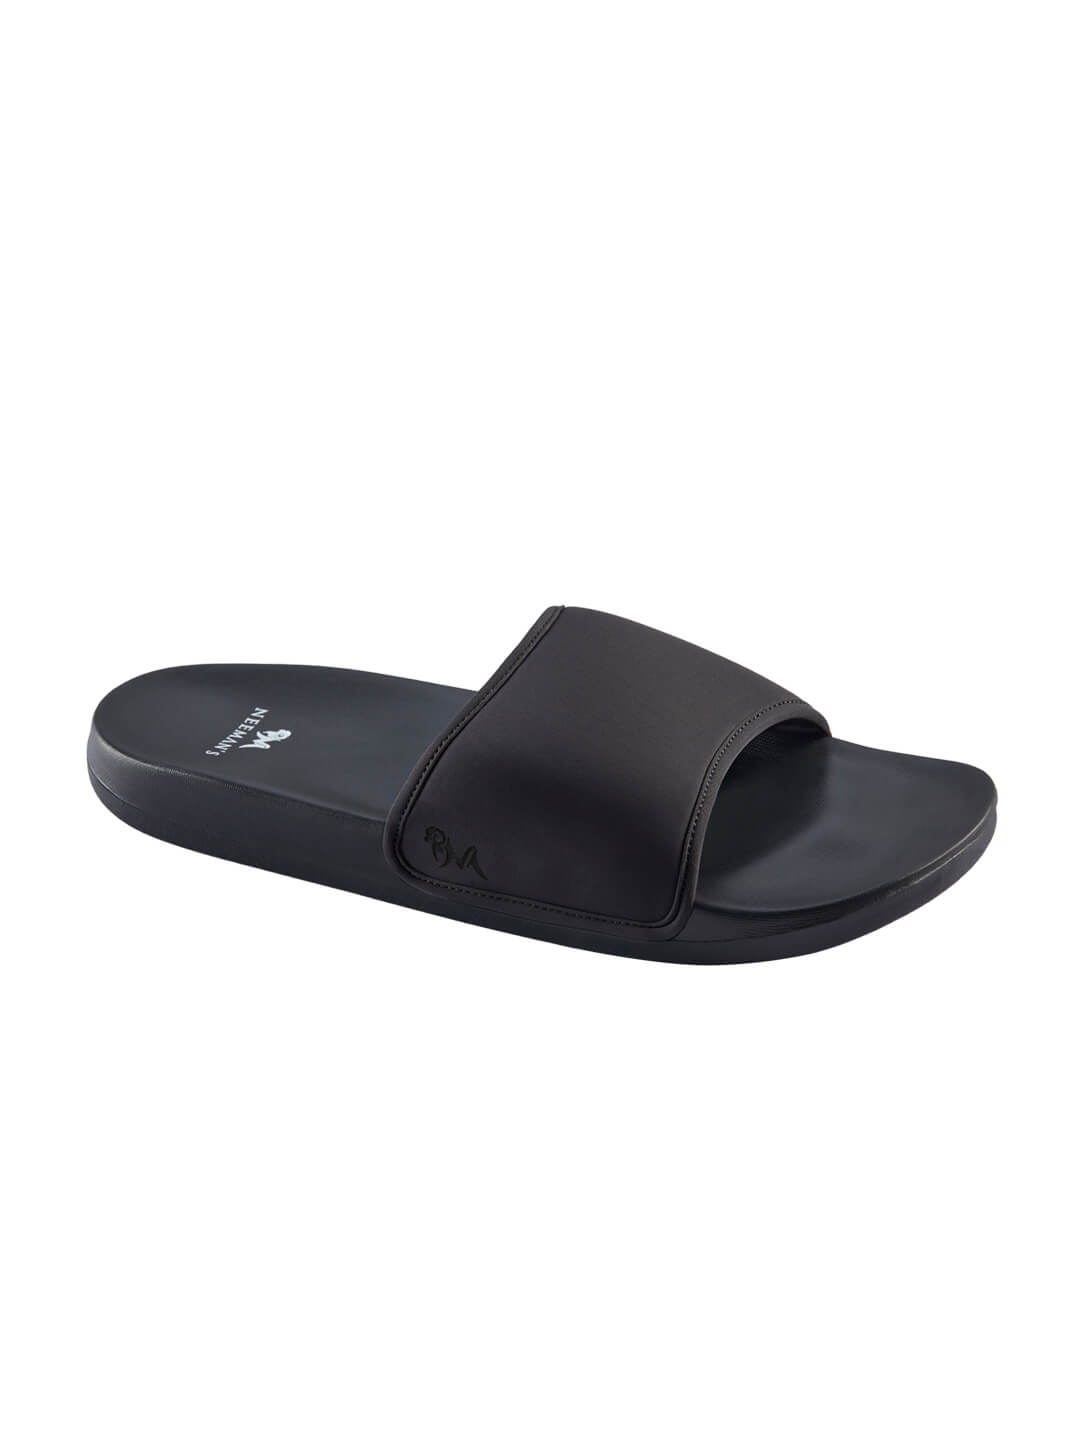  Footwear, Unisex Footwear, Black Slides